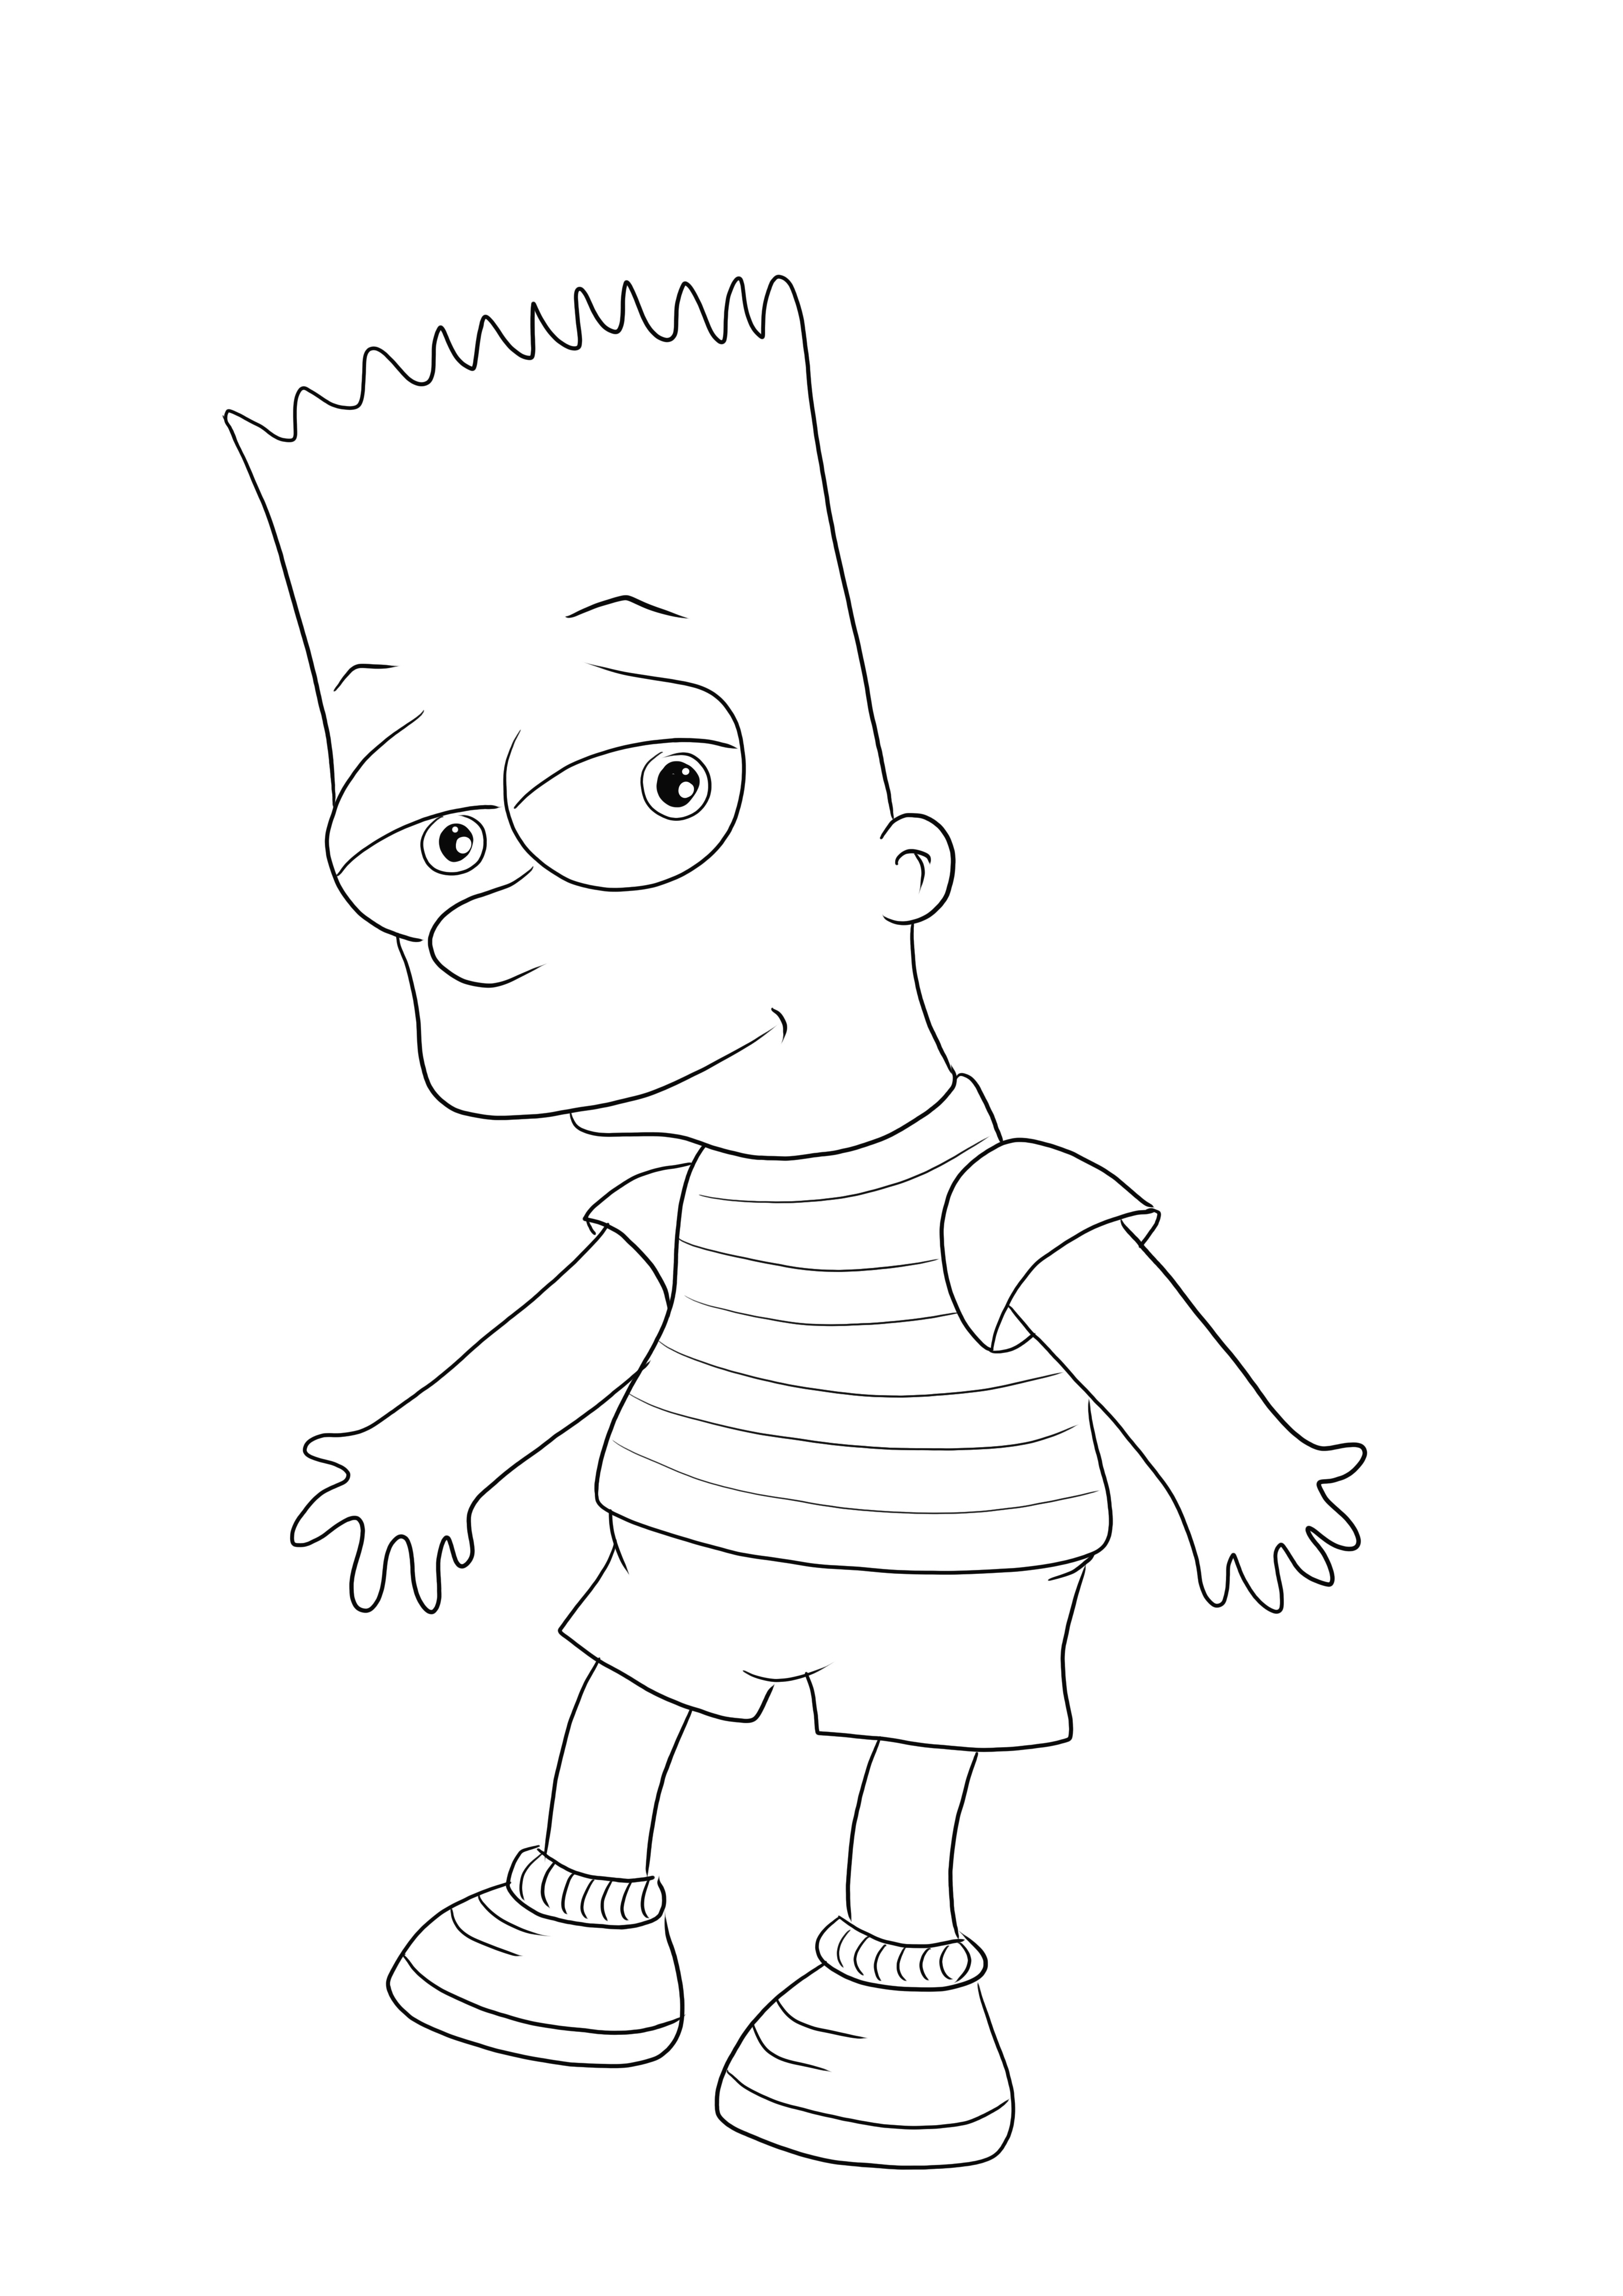 Bart Simpson on ilmainen tulostettava versiomme, joka on helppo värittää tai ladata